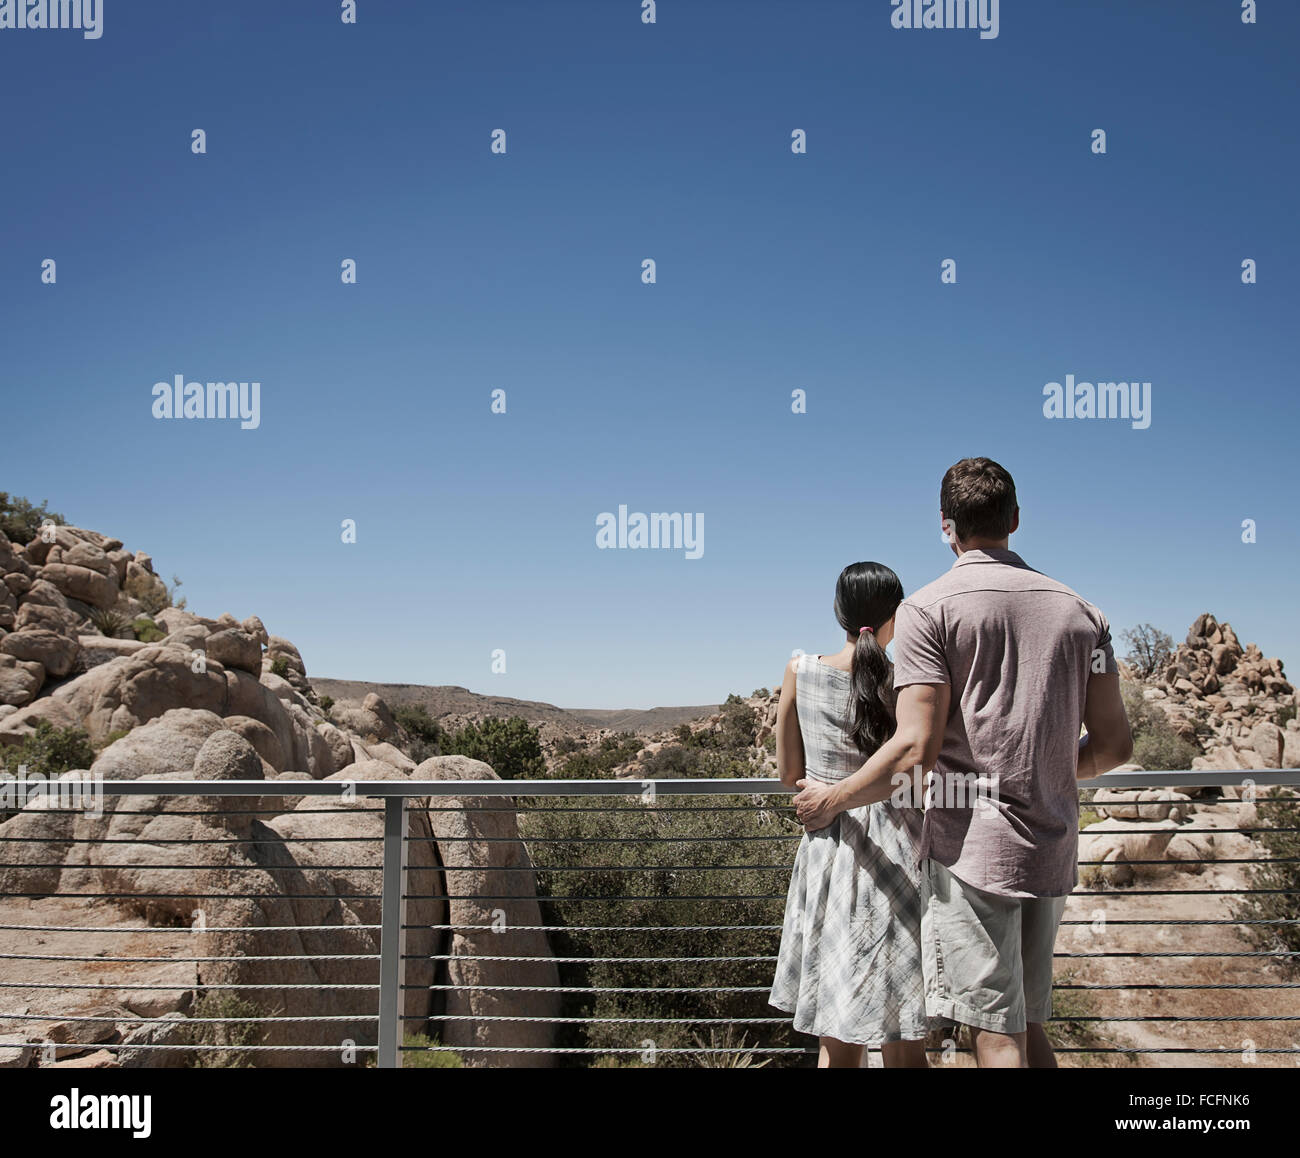 Un homme et une femme sur la terrasse d'une maison écologique, la recherche sur le paysage rocheux Banque D'Images